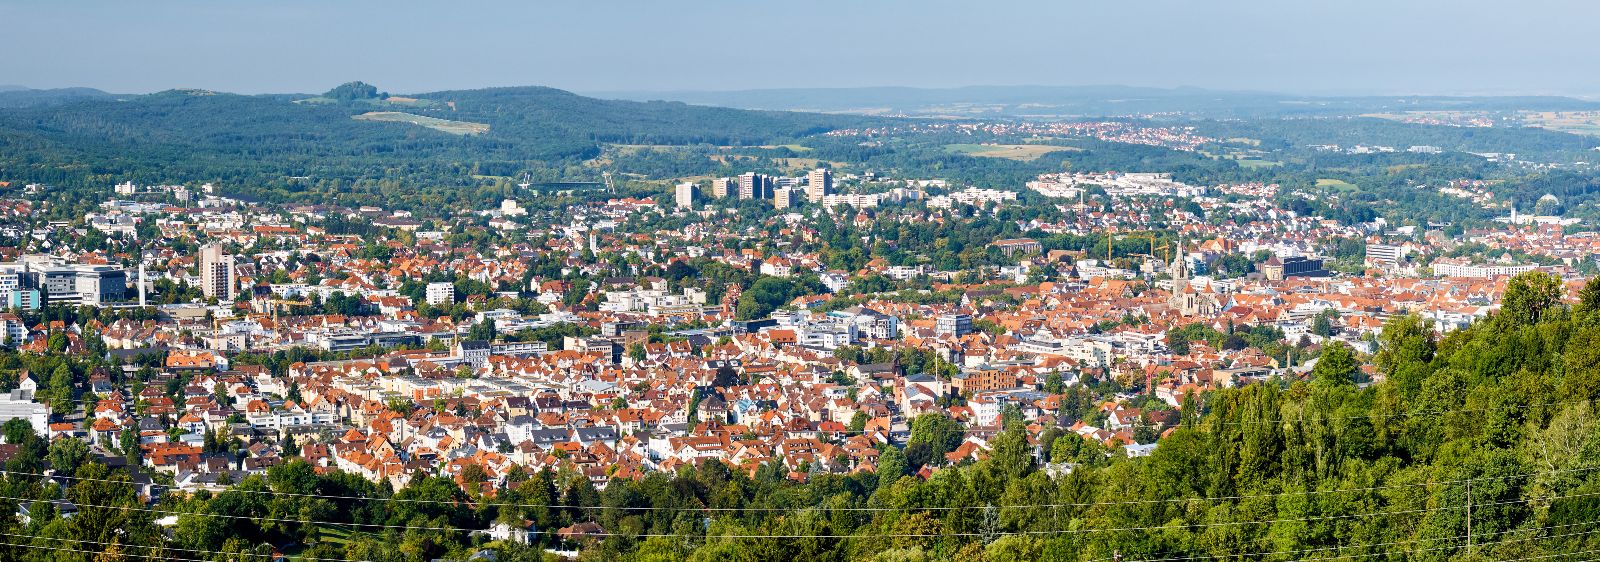 Luftbildaufnahme von Reutlingen in Stuttgart.